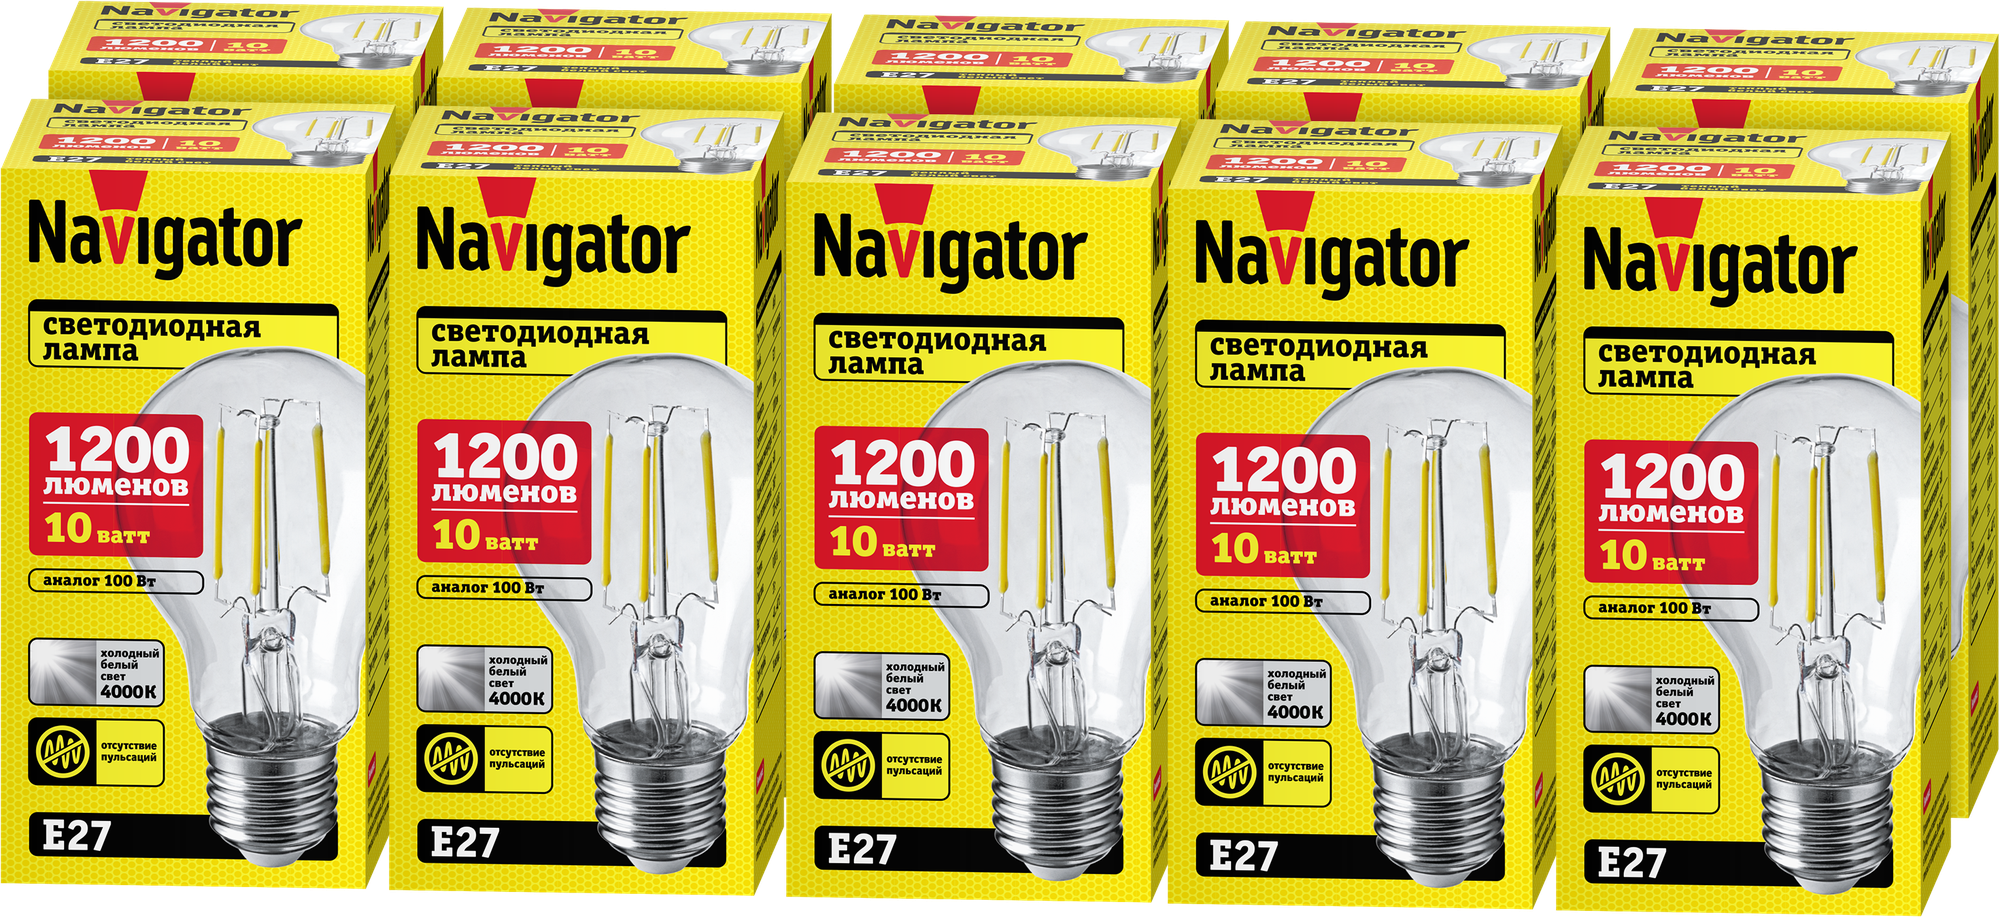 Cветодиодная лампа Navigator 80 539, 10 Вт, груша Е27, дневного света 4000К, упаковка 10 шт.